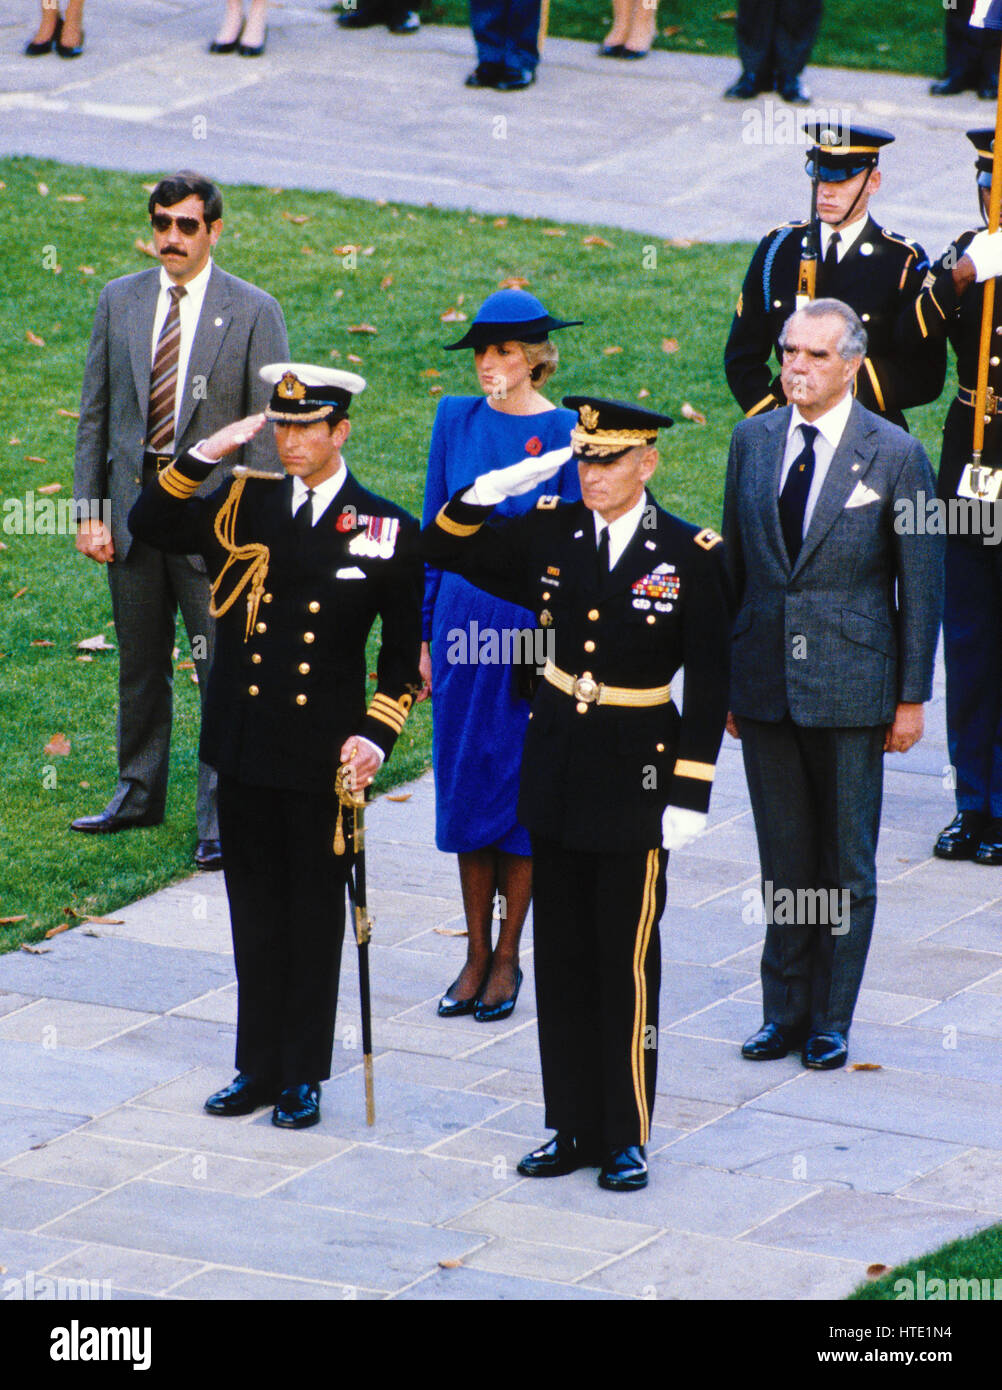 La princesse Diana, centre en robe bleue, regarde son mari le prince Charles, à gauche au centre, rend hommage au cours d'une cérémonie d'une gerbe sur la tombe des inconnues à l'occasion de la Journée des anciens combattants au cimetière national d'Arlington, à Arlington, Virginia sur Novembe Banque D'Images